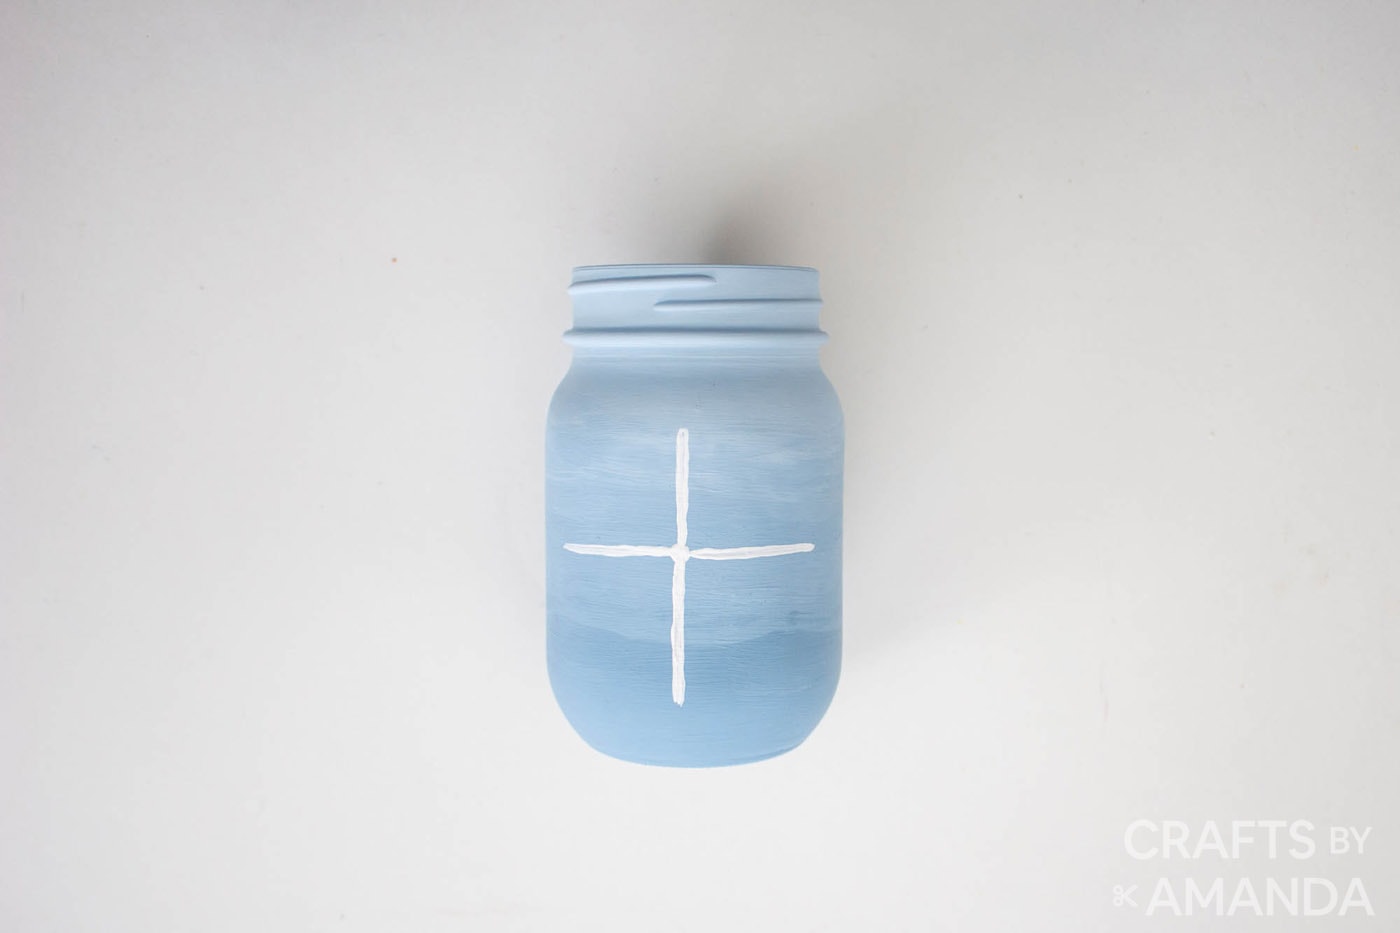 cross painted on jar